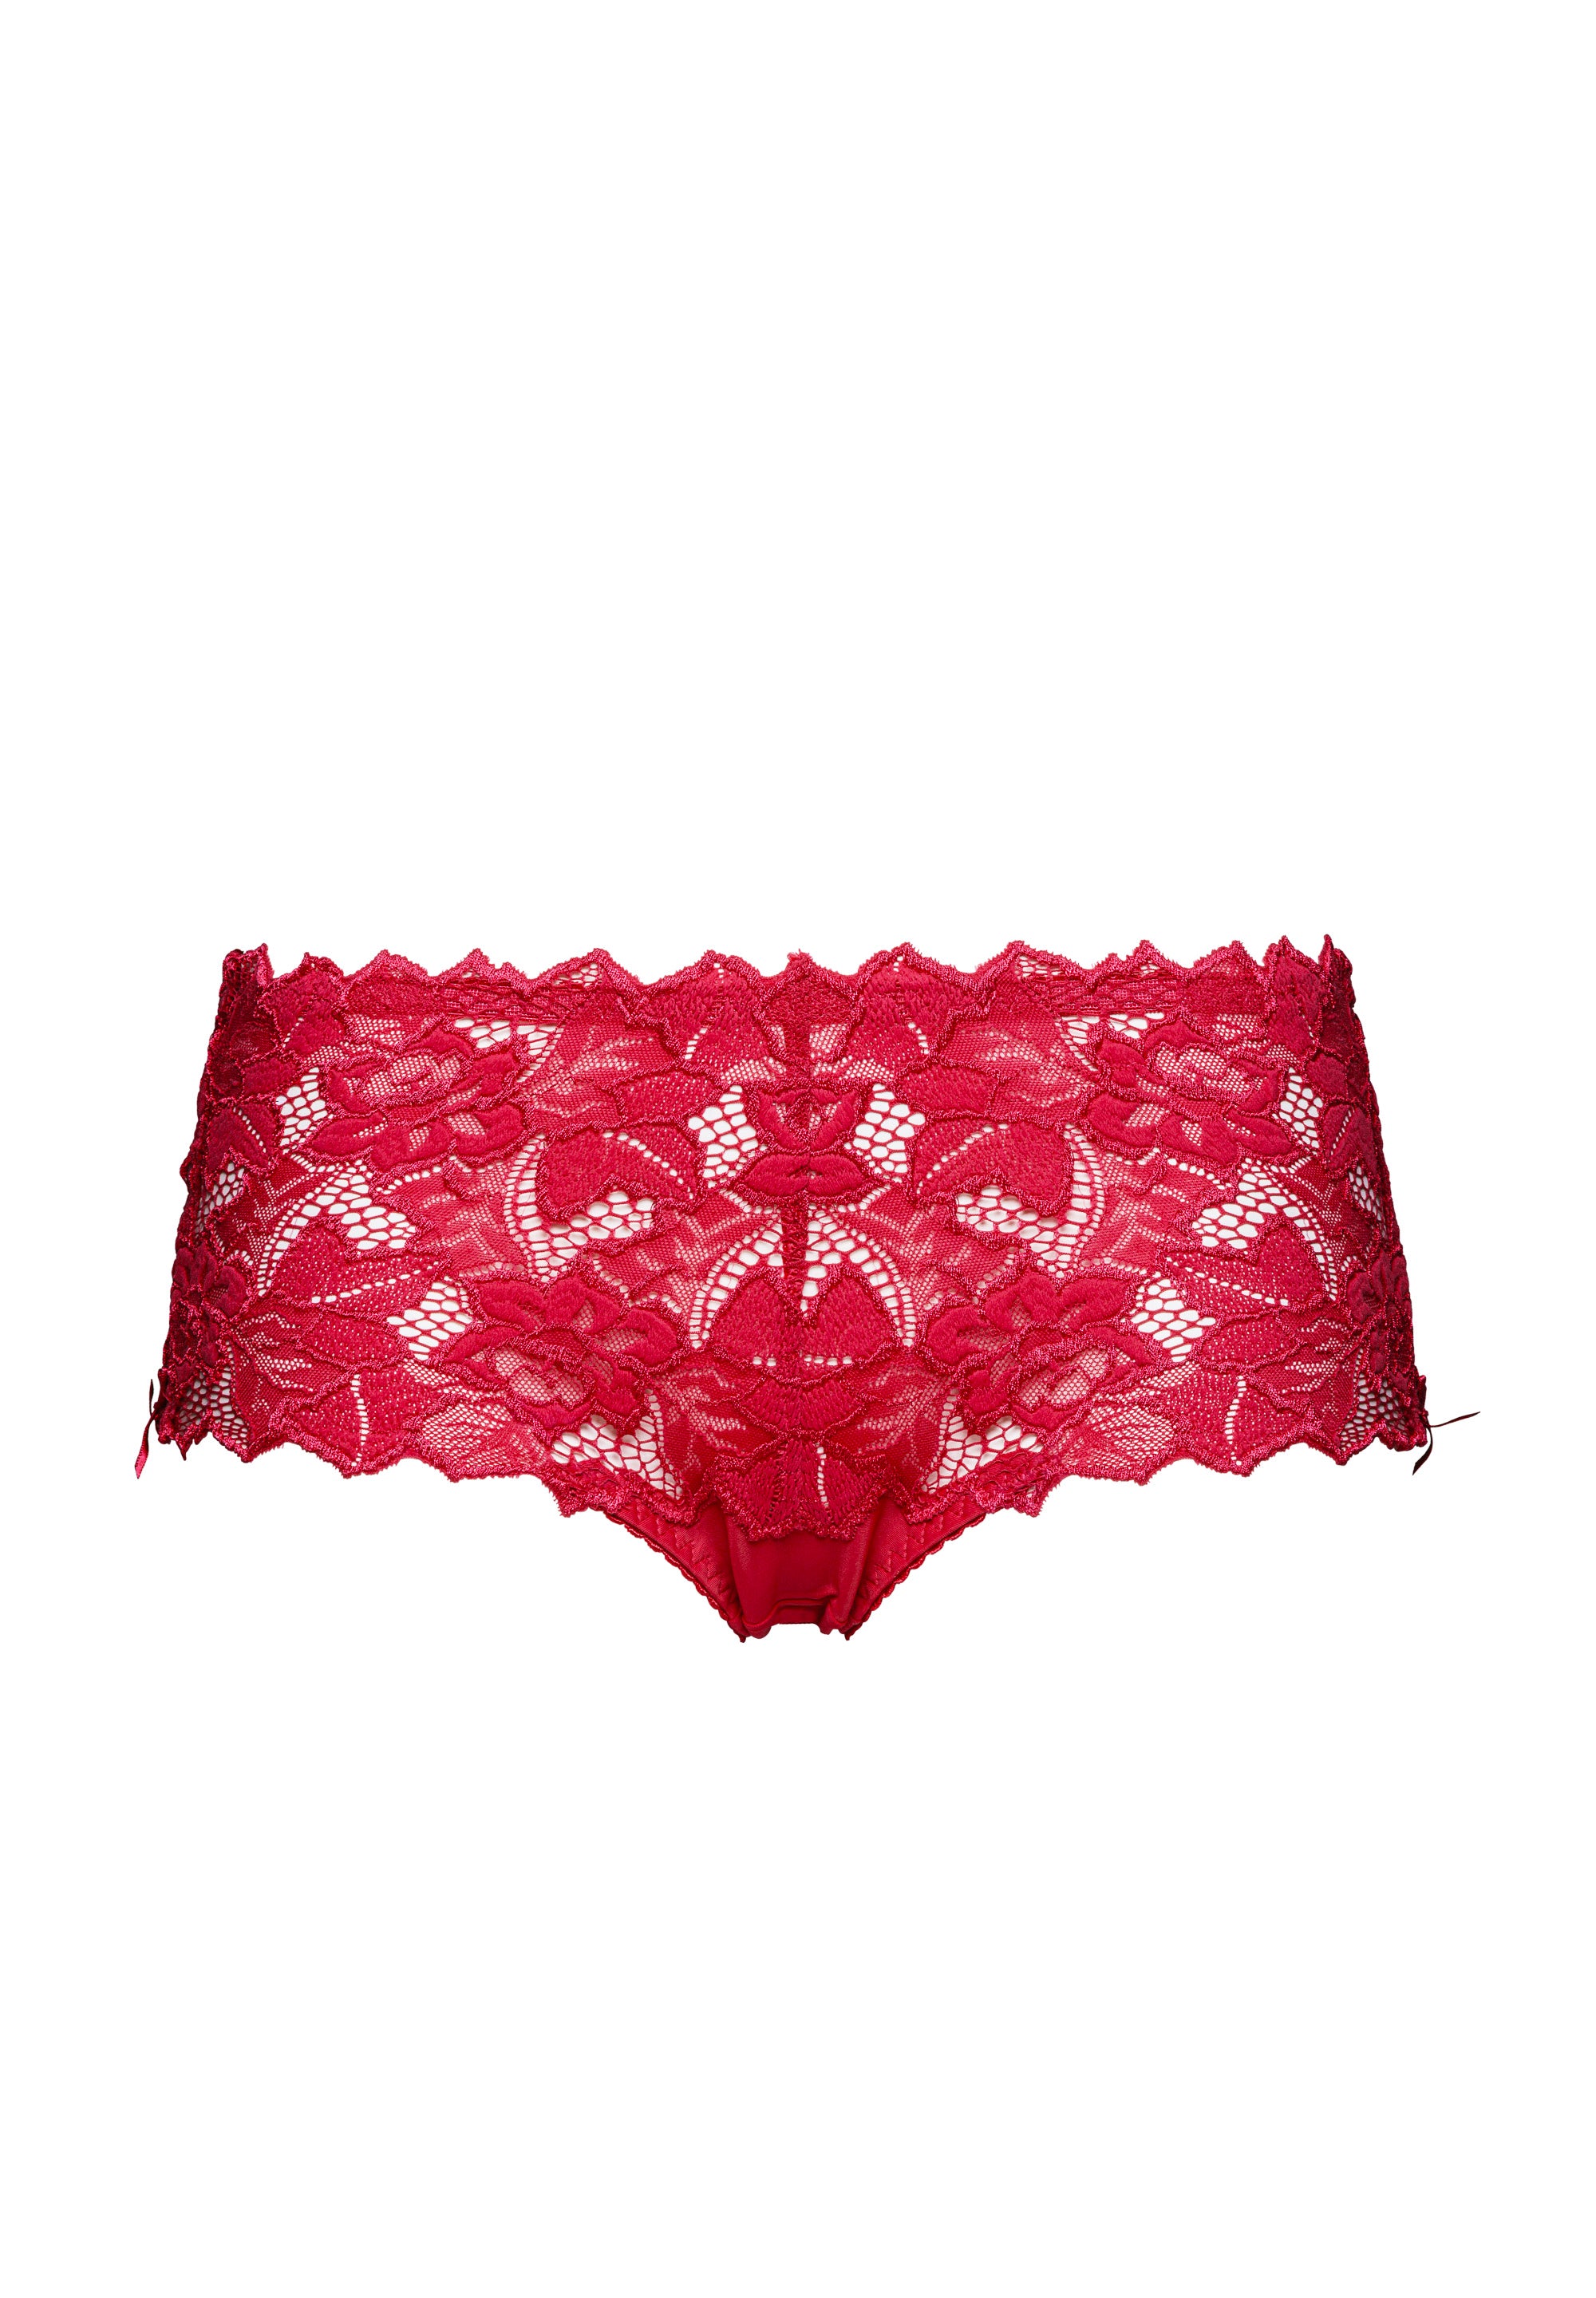 Arum Persian Red Panties 